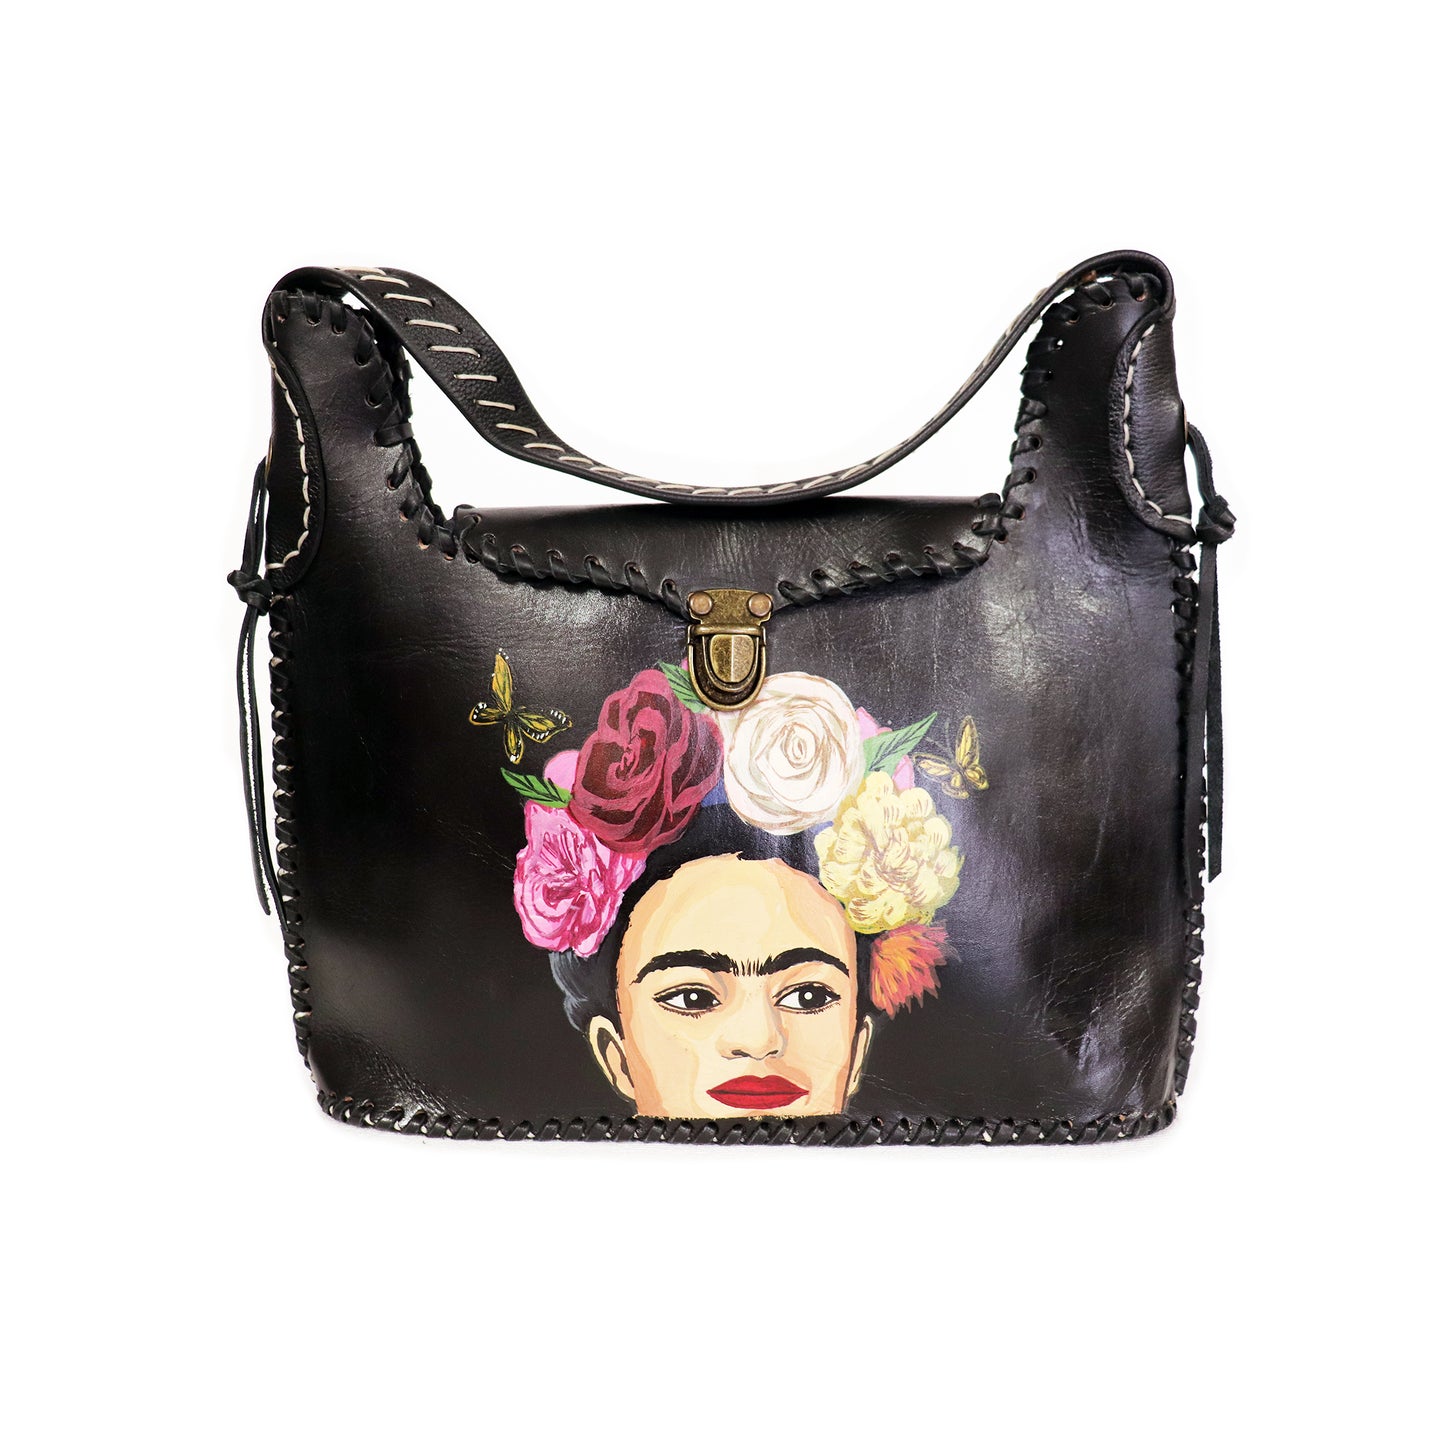 Frida Kahlo - Side Portrait Brown Handbag and Clutch set